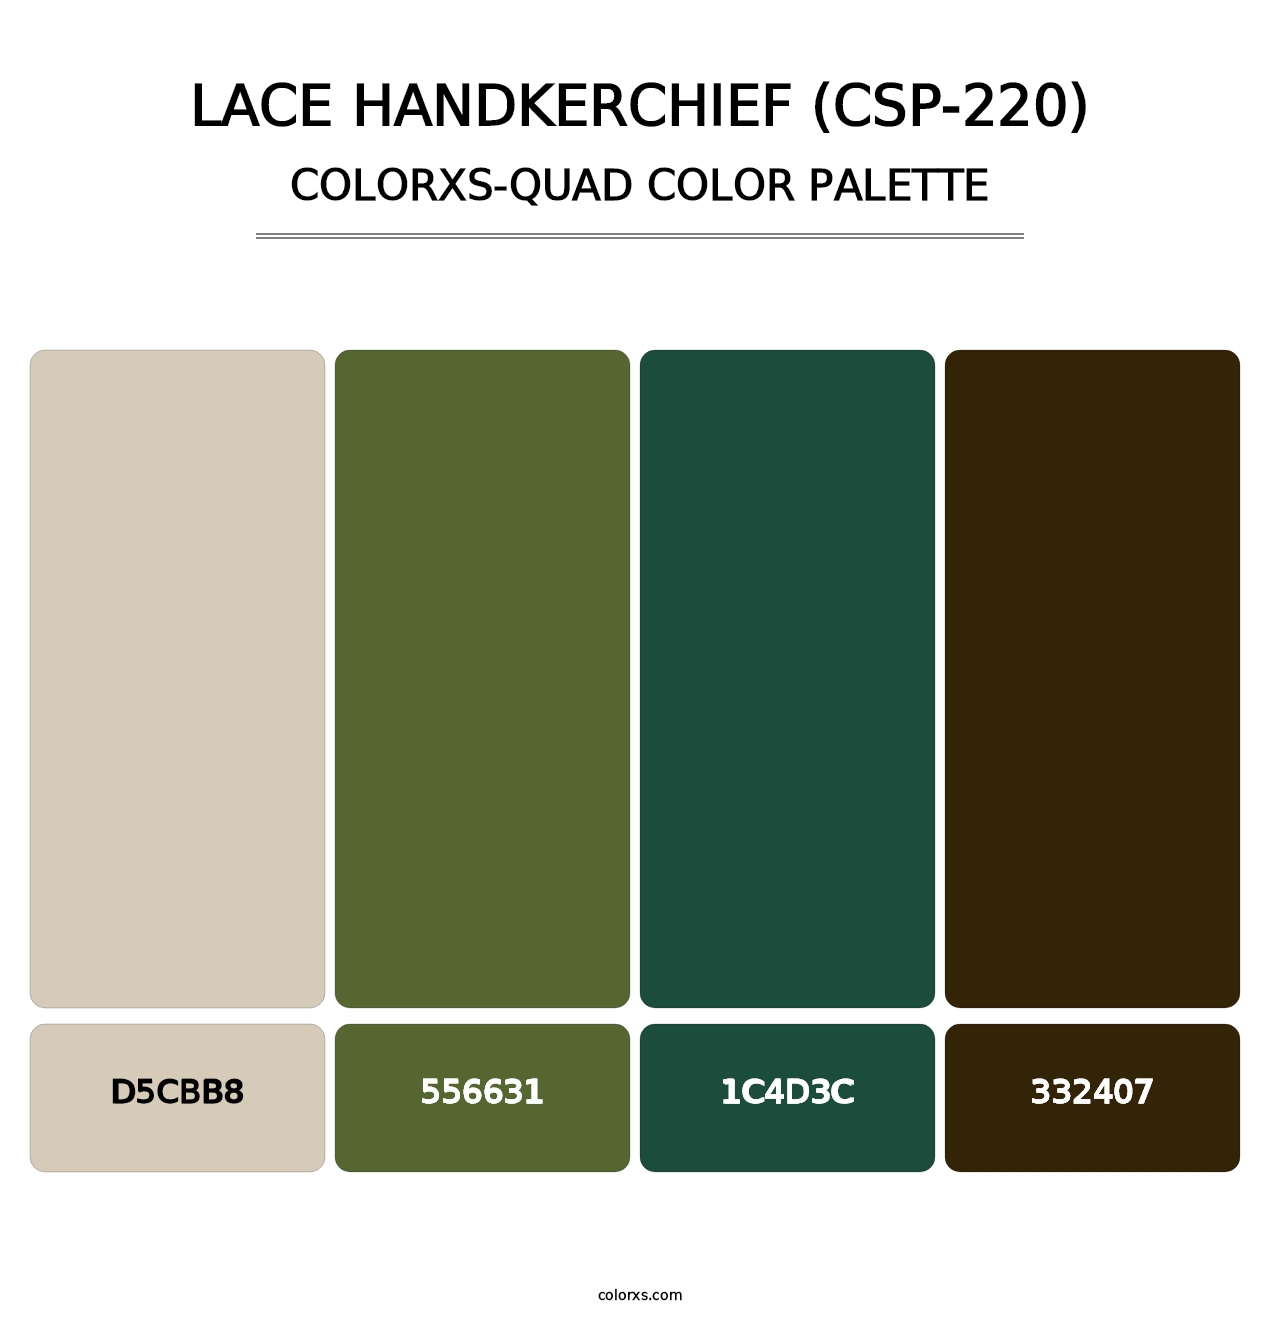 Lace Handkerchief (CSP-220) - Colorxs Quad Palette